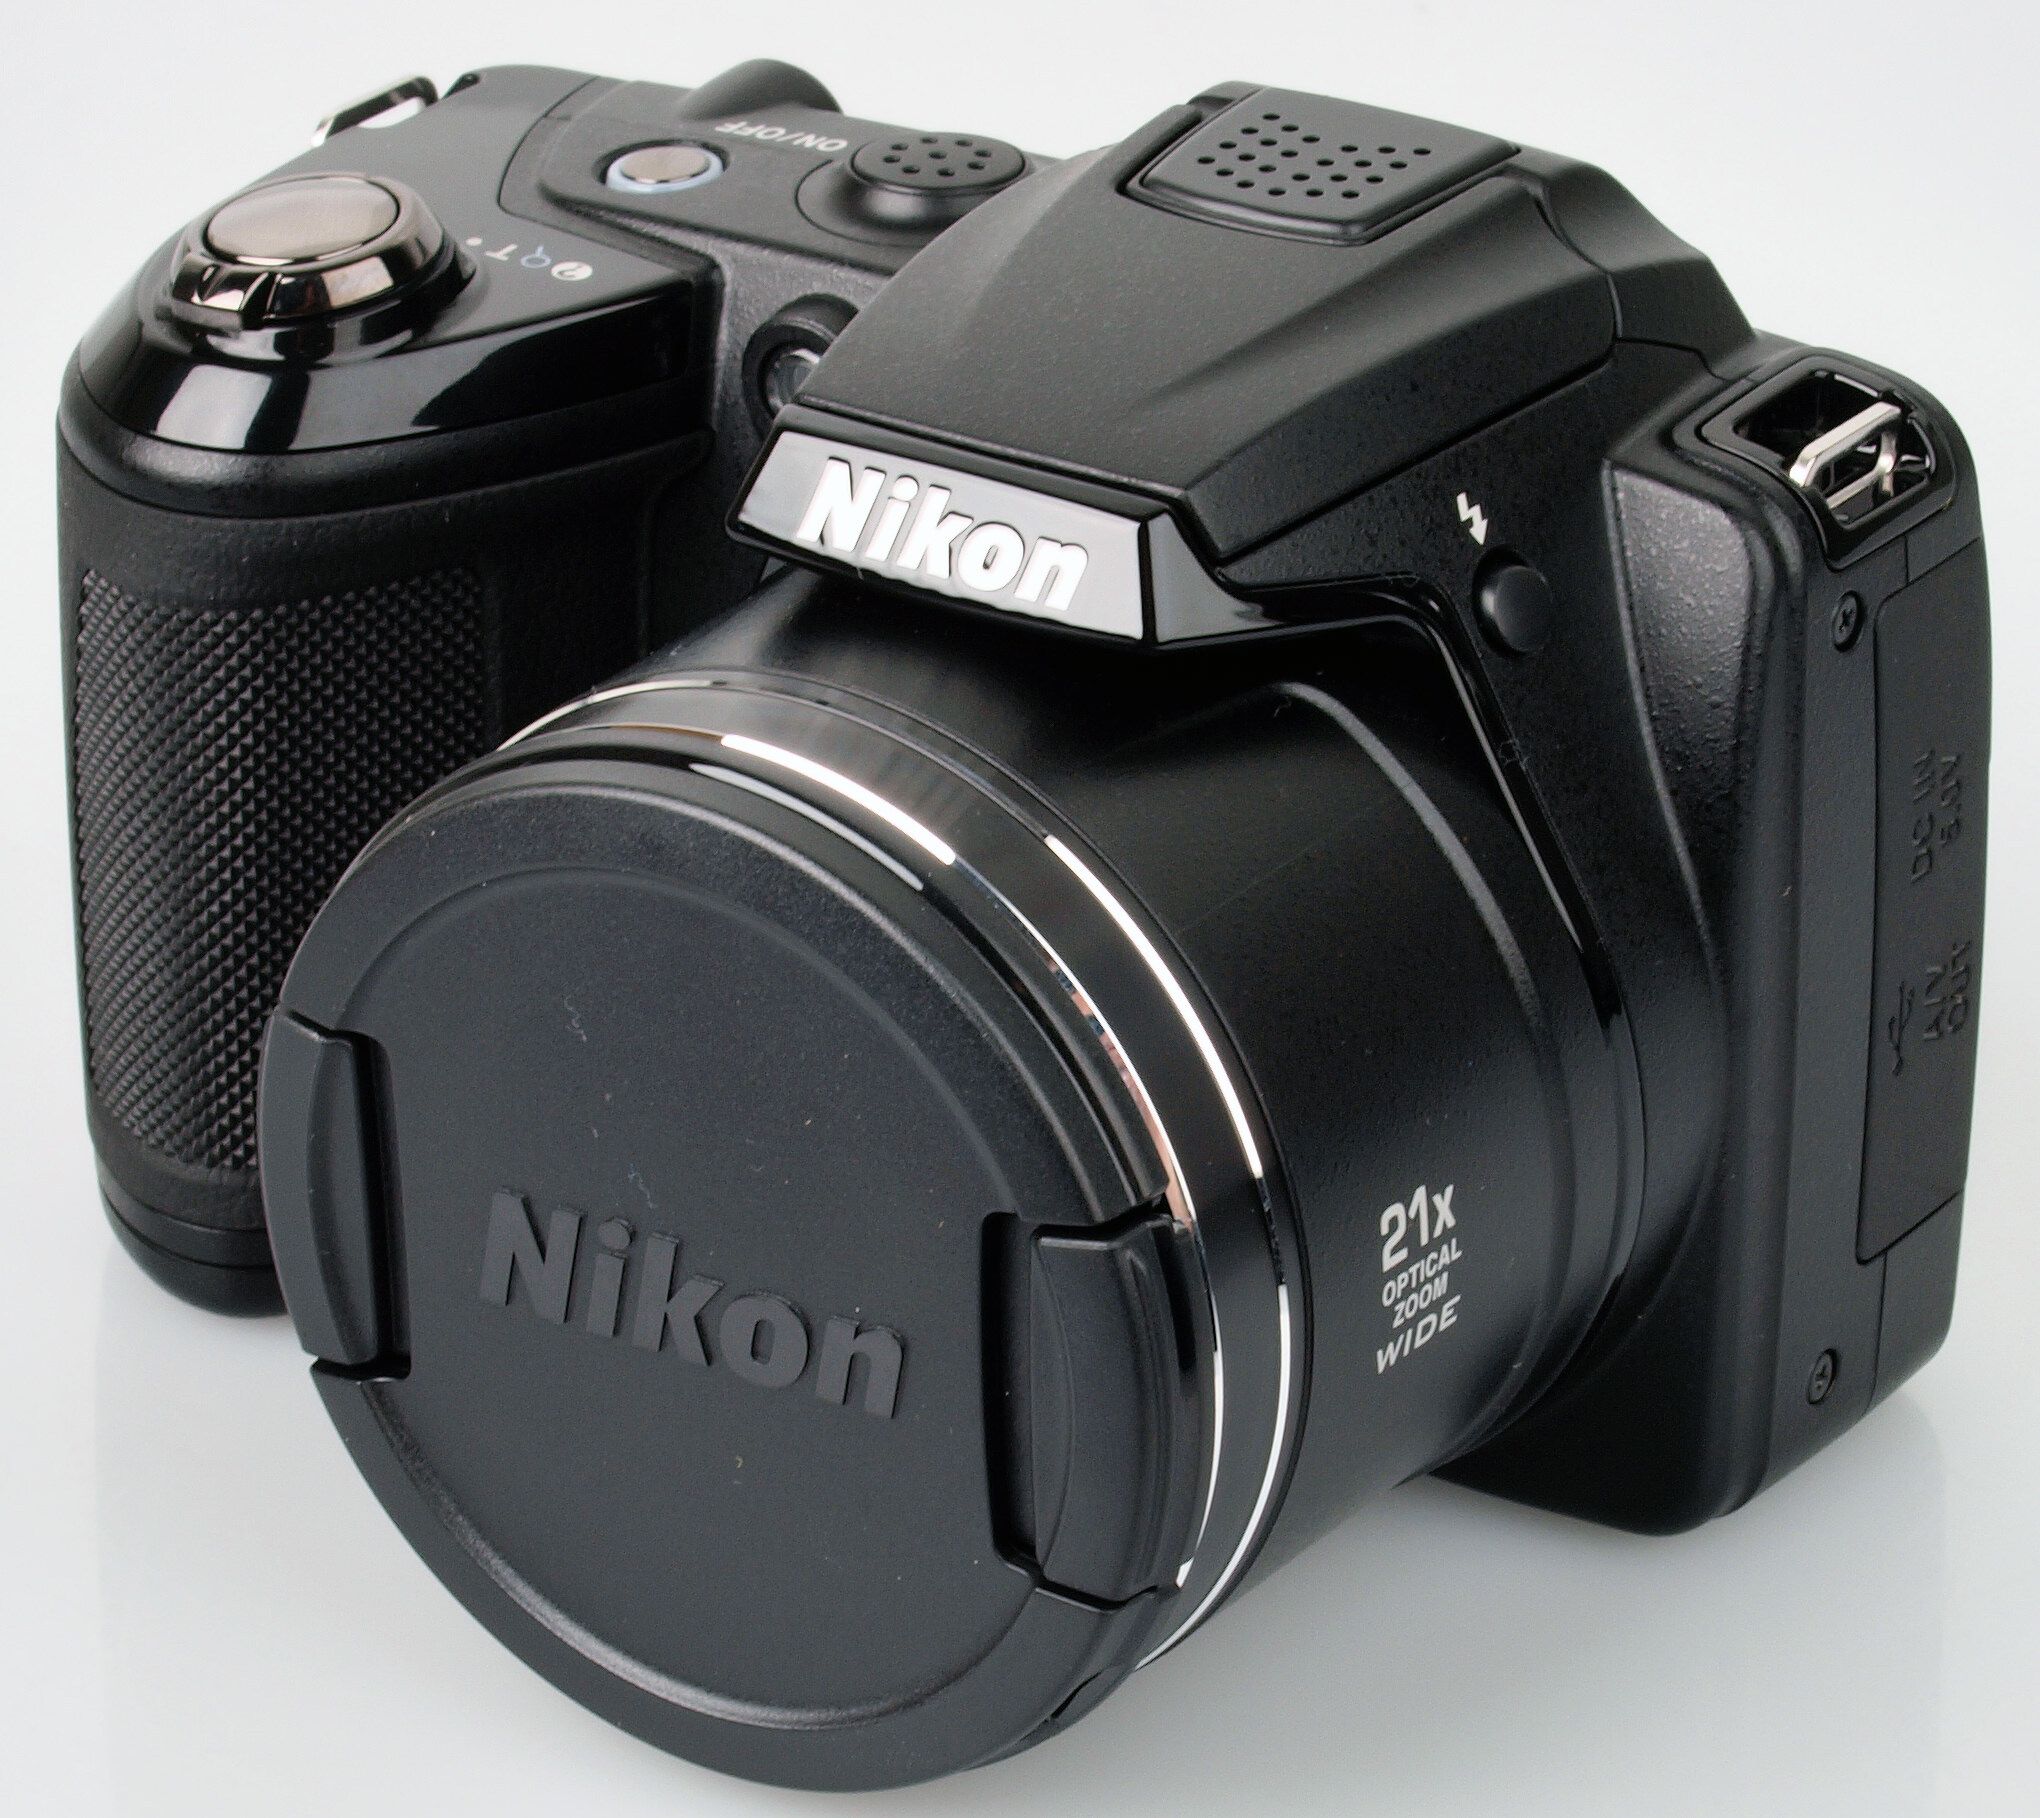 Highres Nikon Coolpix L310 With Lens Cap 1339662543